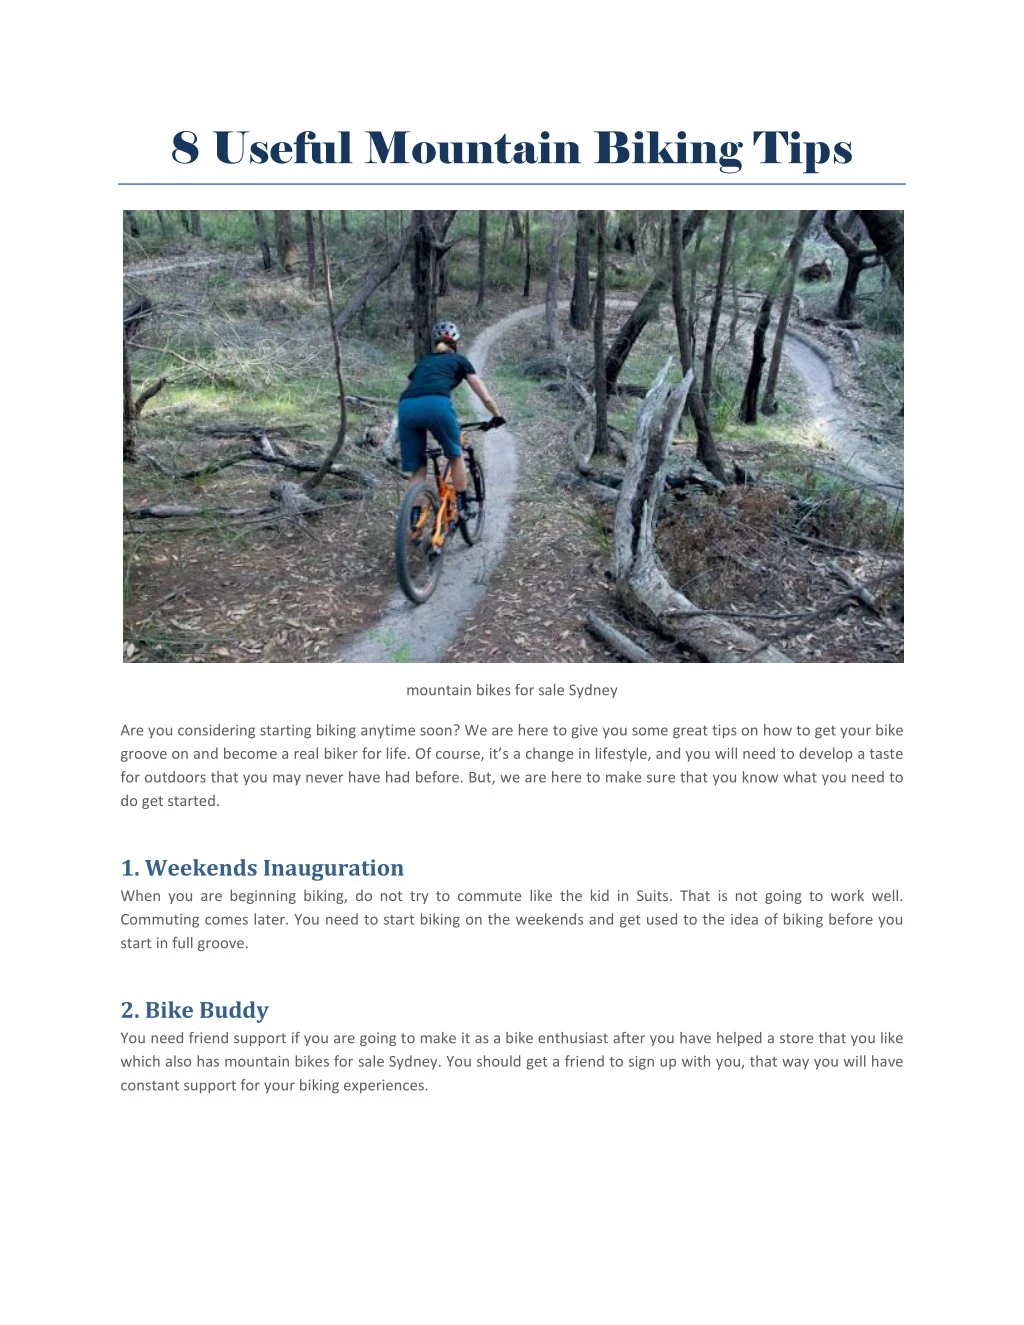 8 useful mountain biking tips